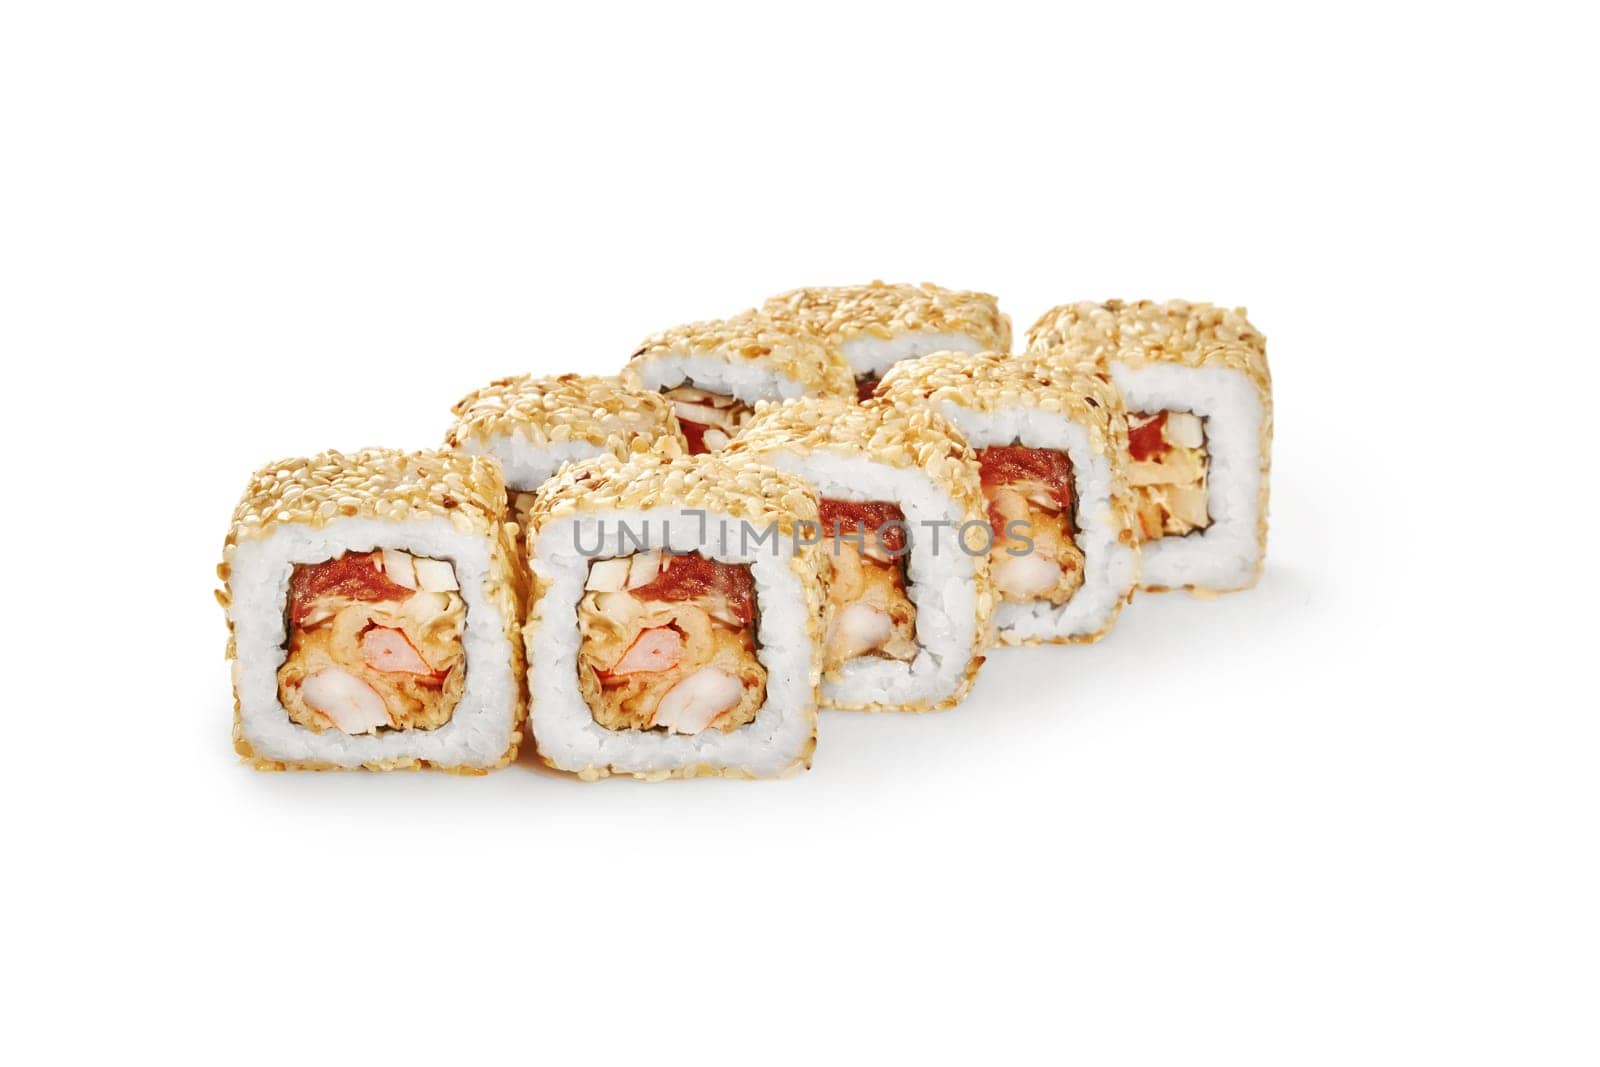 Sesame coated sushi rolls with tempura shrimp and tobiko by nazarovsergey